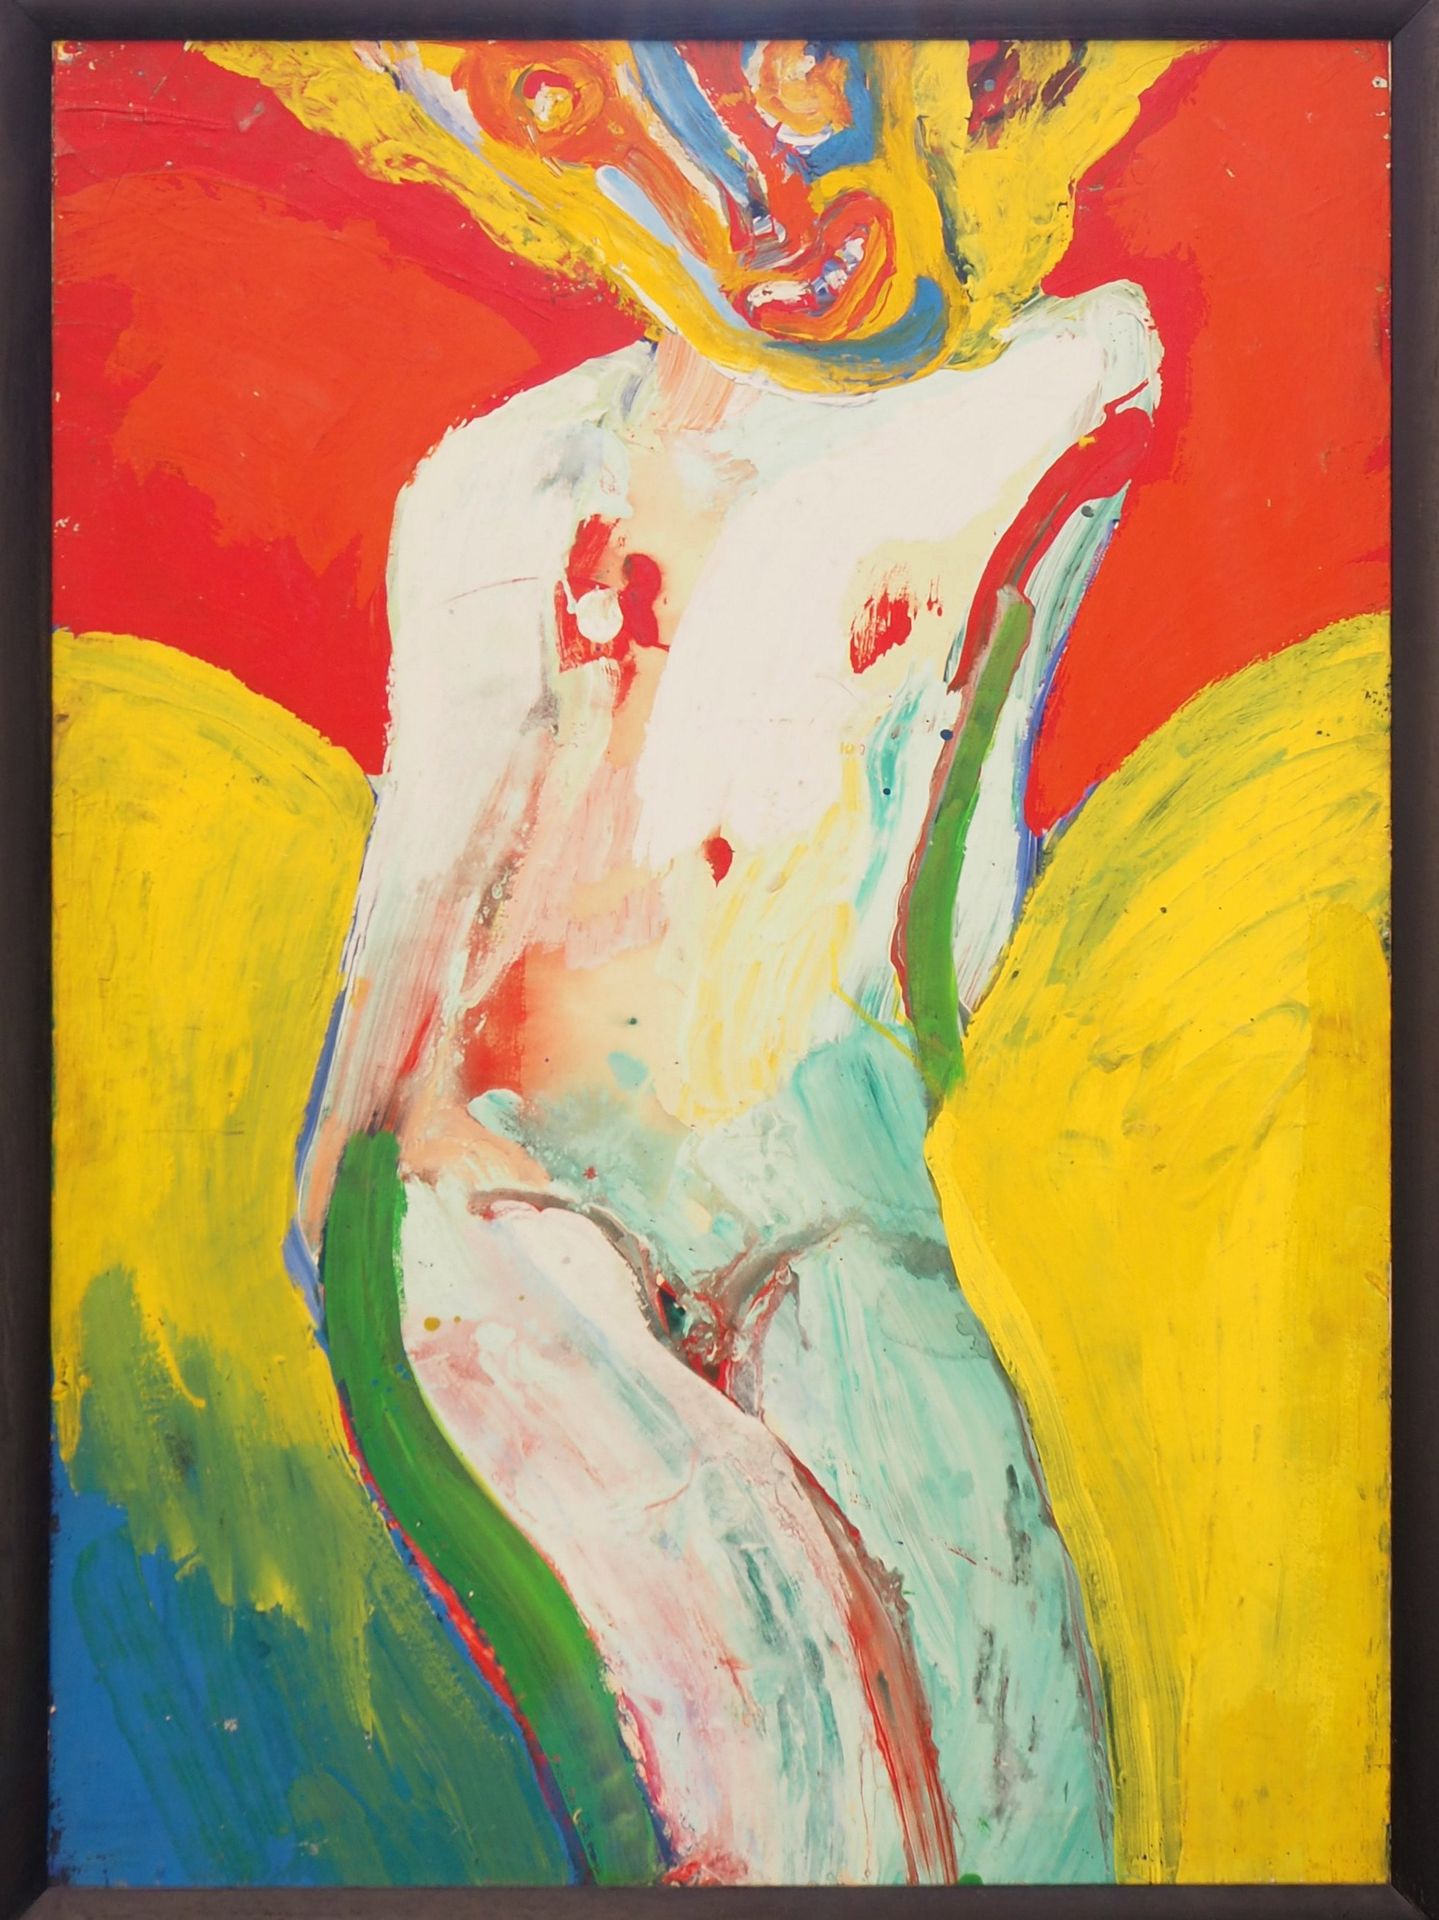 Bengt LINDSTROM 本特-林德斯特罗姆 (1925-2008)

快乐的年轻女孩

纸上油彩，装在面板上

无符号

画板上 107 x 77 cm&hellip;